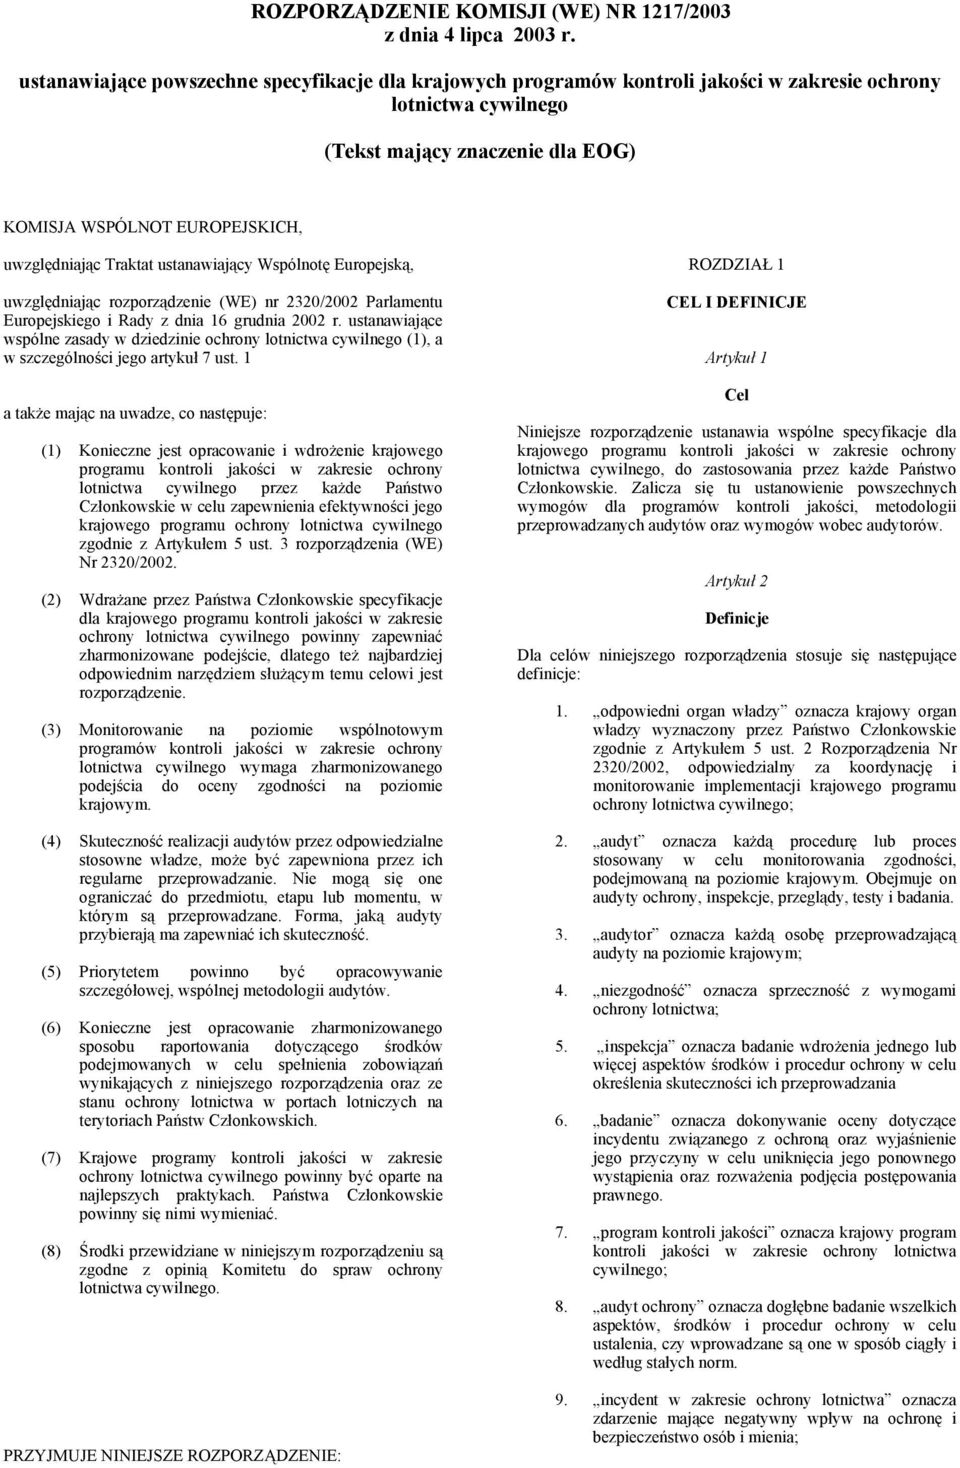 Traktat ustanawiający Wspólnotę Europejską, uwzględniając rozporządzenie (WE) nr 2320/2002 Parlamentu Europejskiego i Rady z dnia 16 grudnia 2002 r.